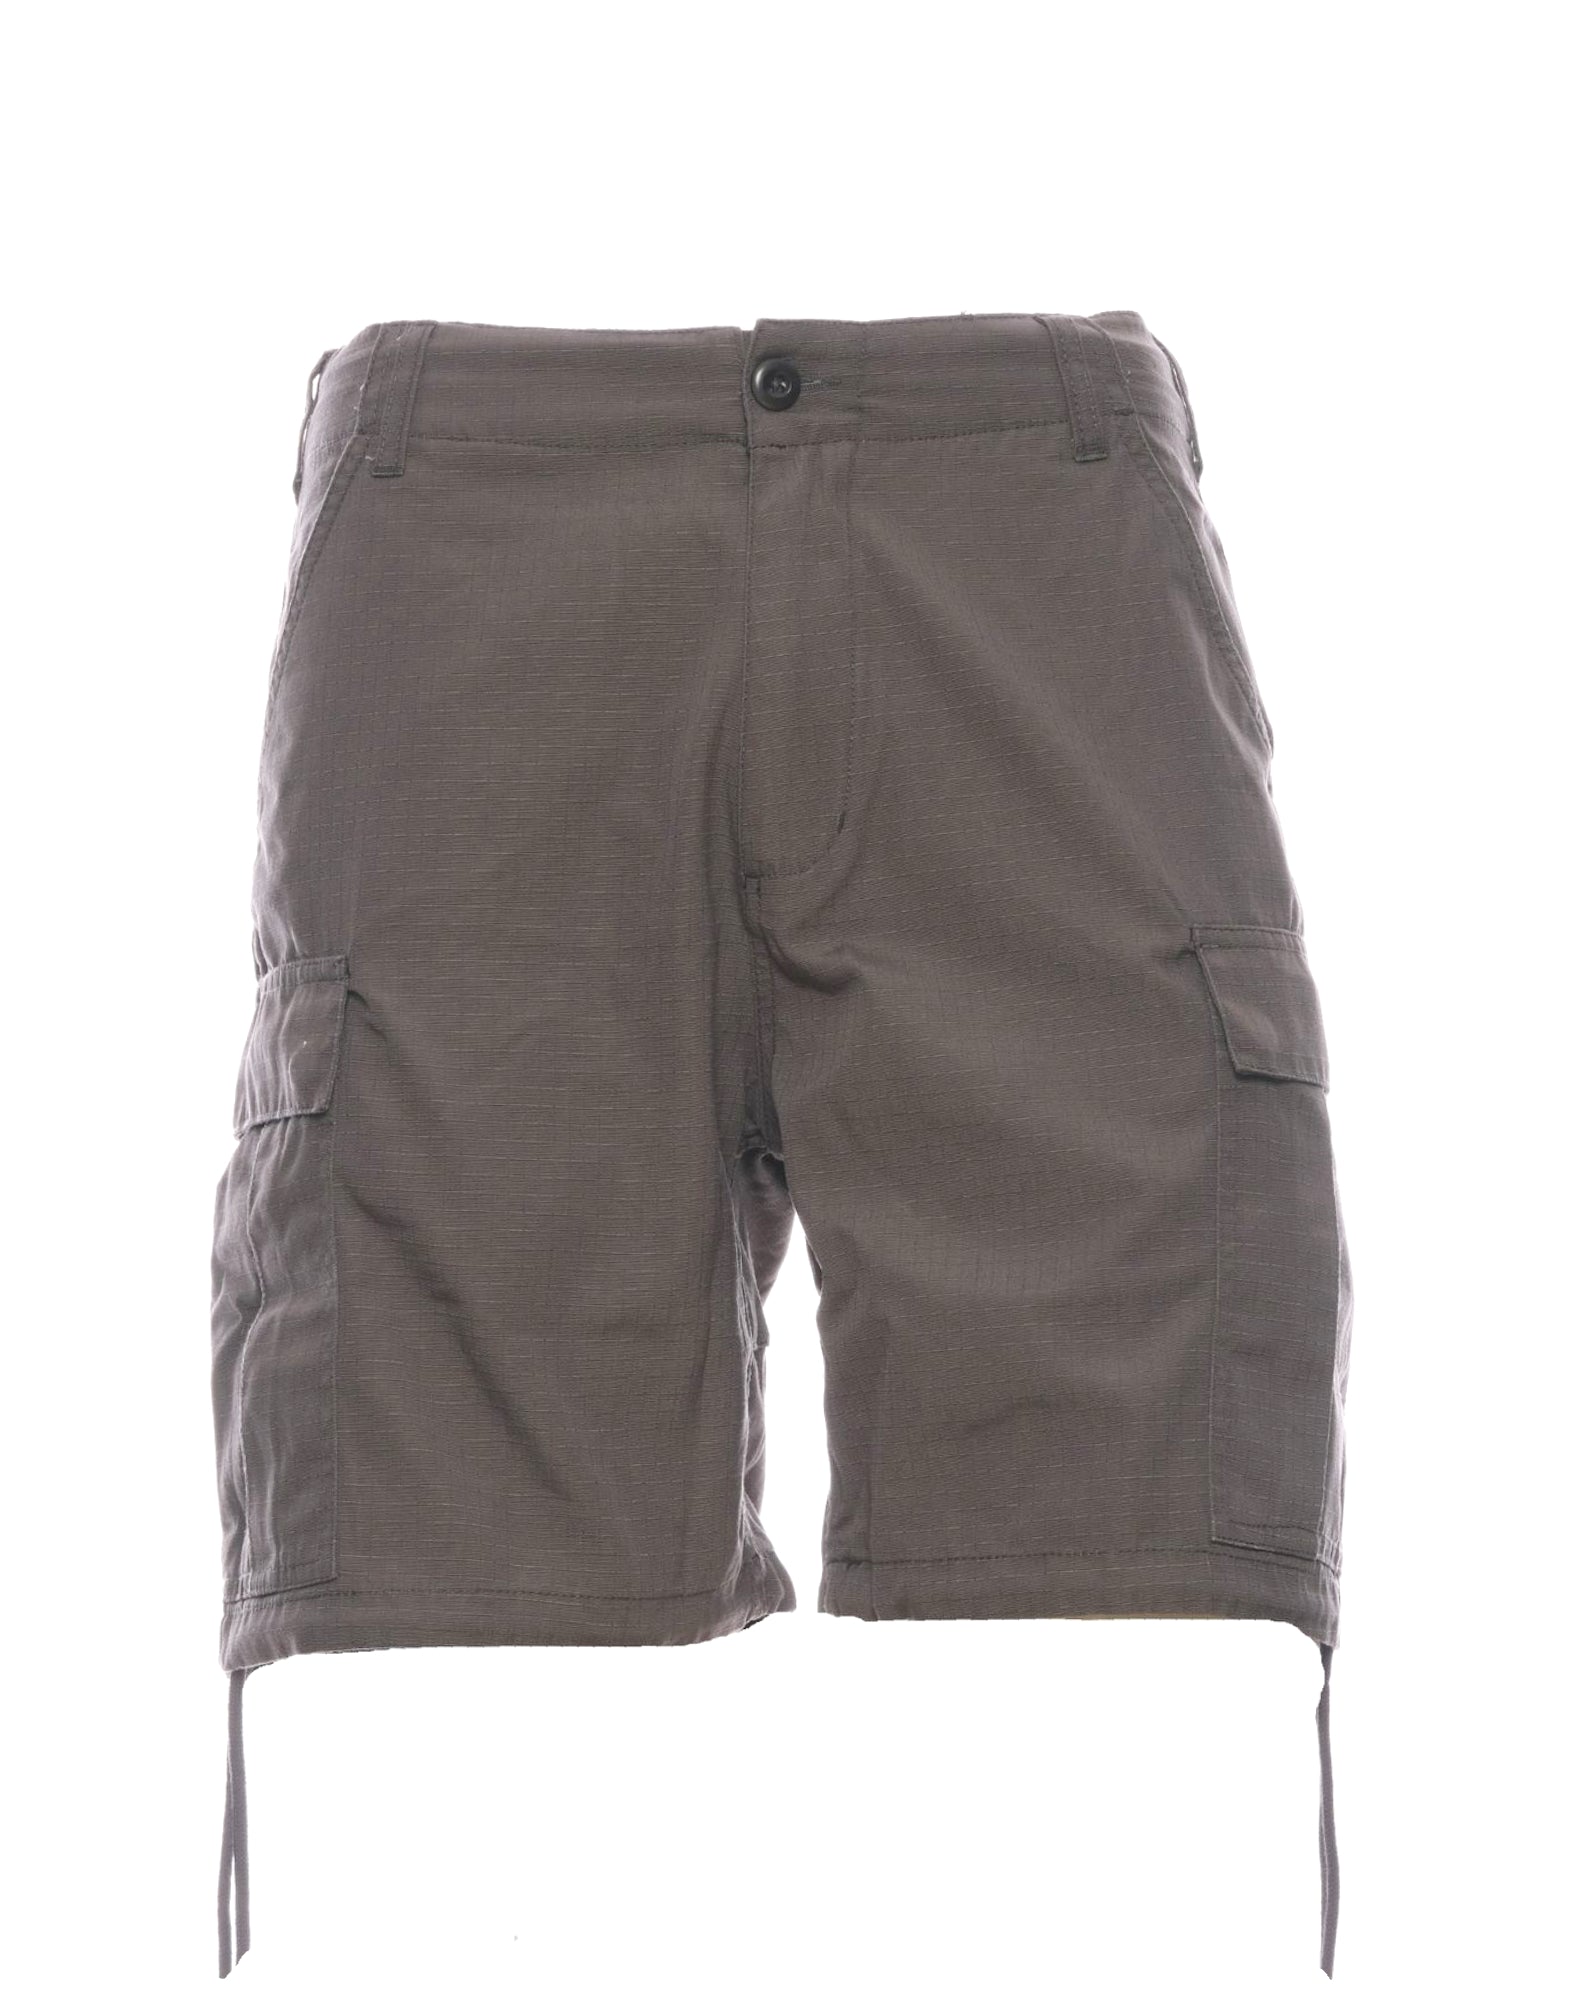 Pantalones cortos para hombre DMP233757 ATH Deus Ex Machina